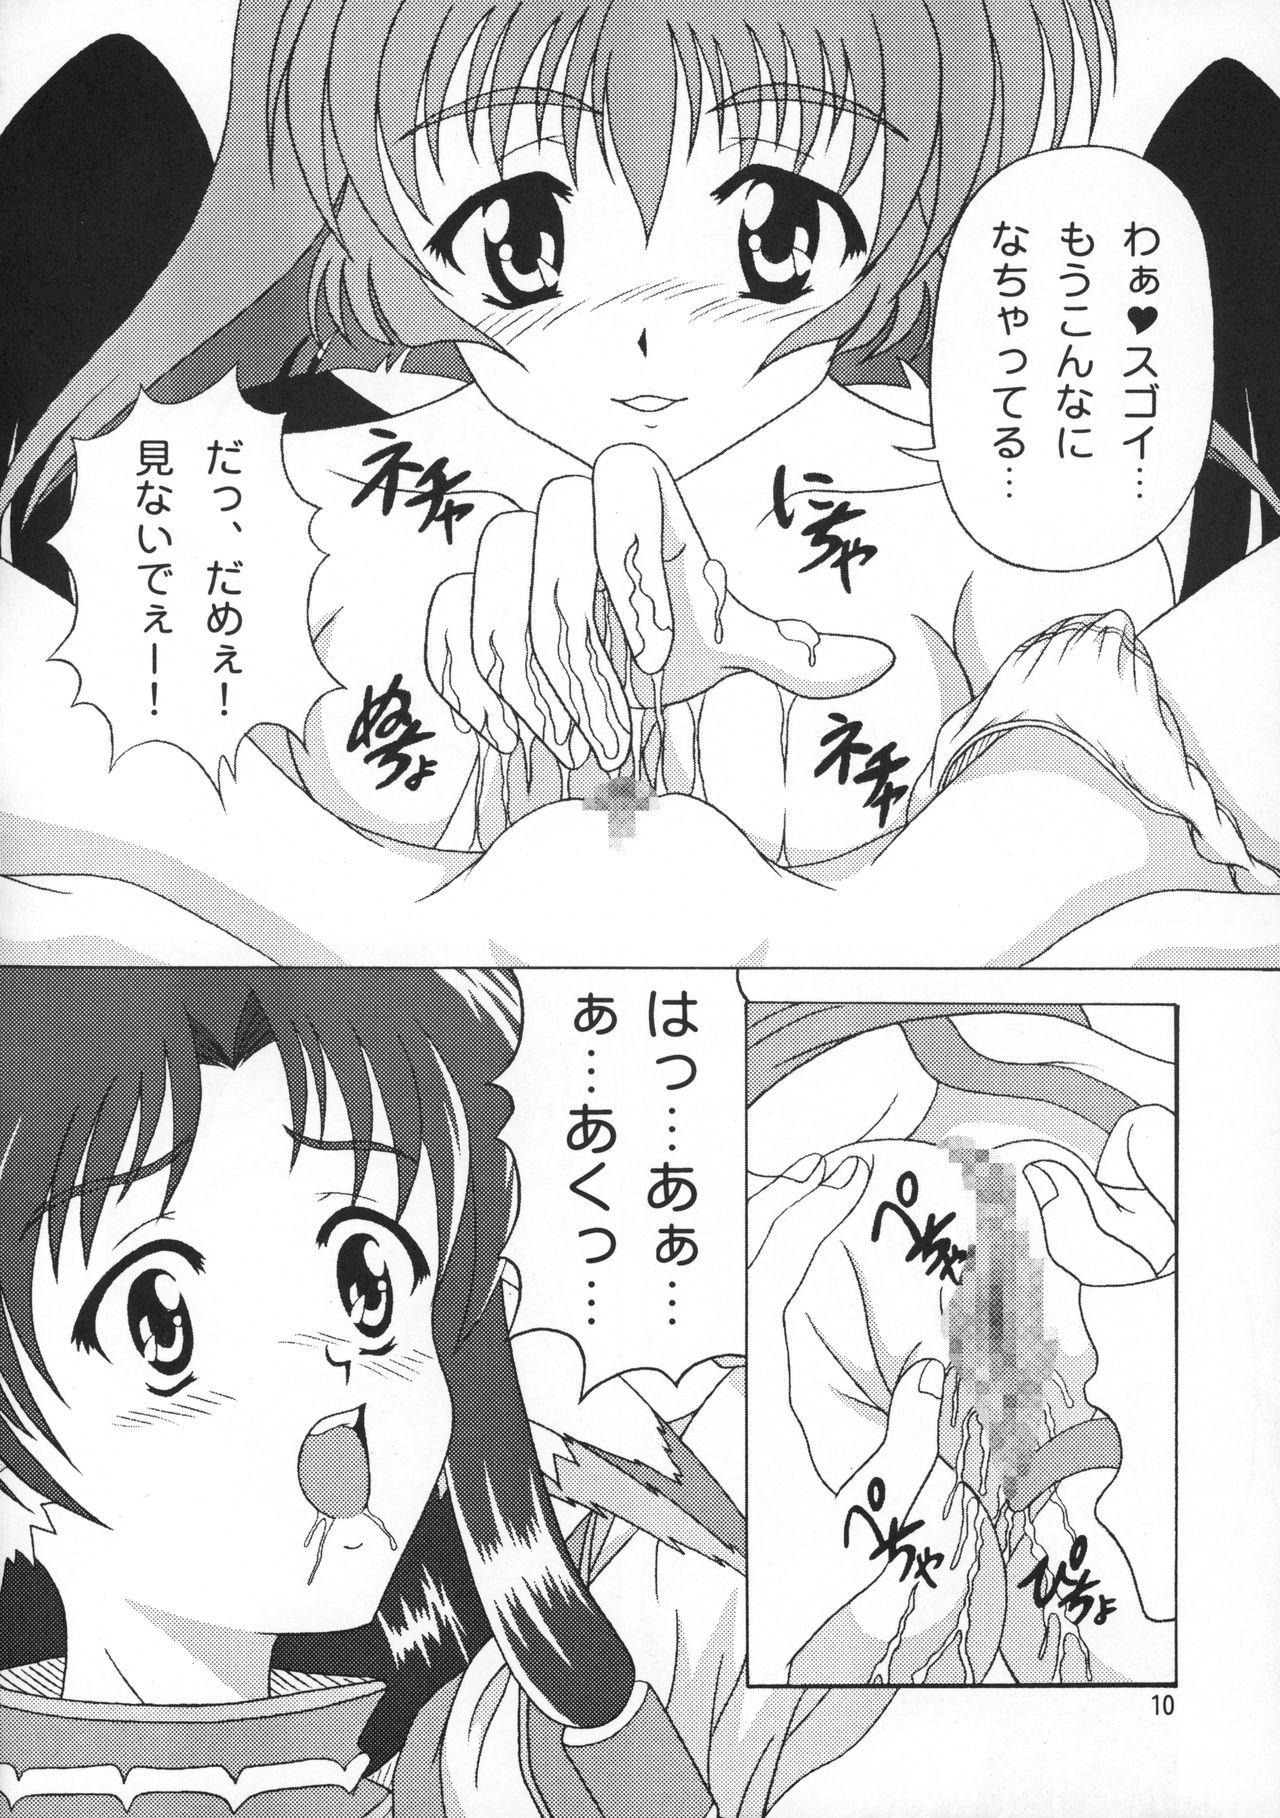 Pussy Utawarerumono Hon - Utawarerumono Double - Page 10